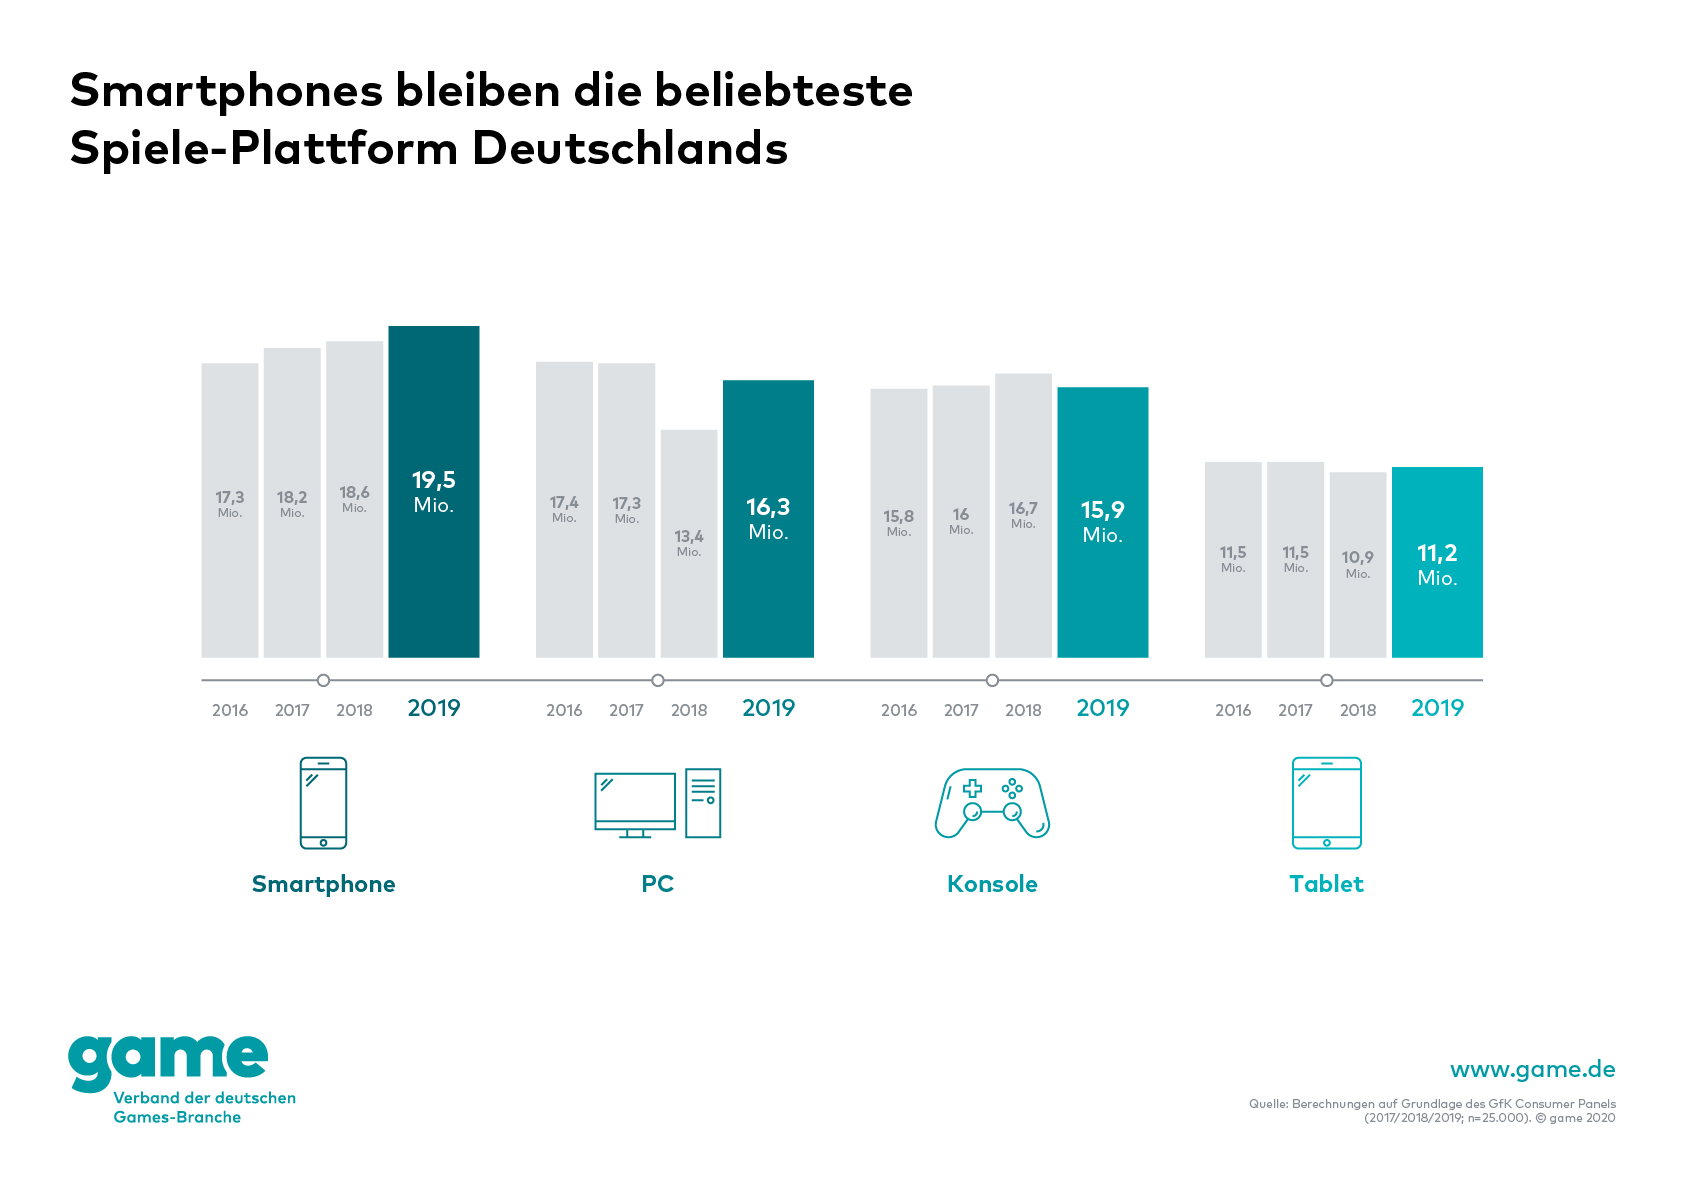 game_Grafik_Smartphones-bleiben-die-beliebteste-Spiele-Plattform-der-Deutschen.jpg